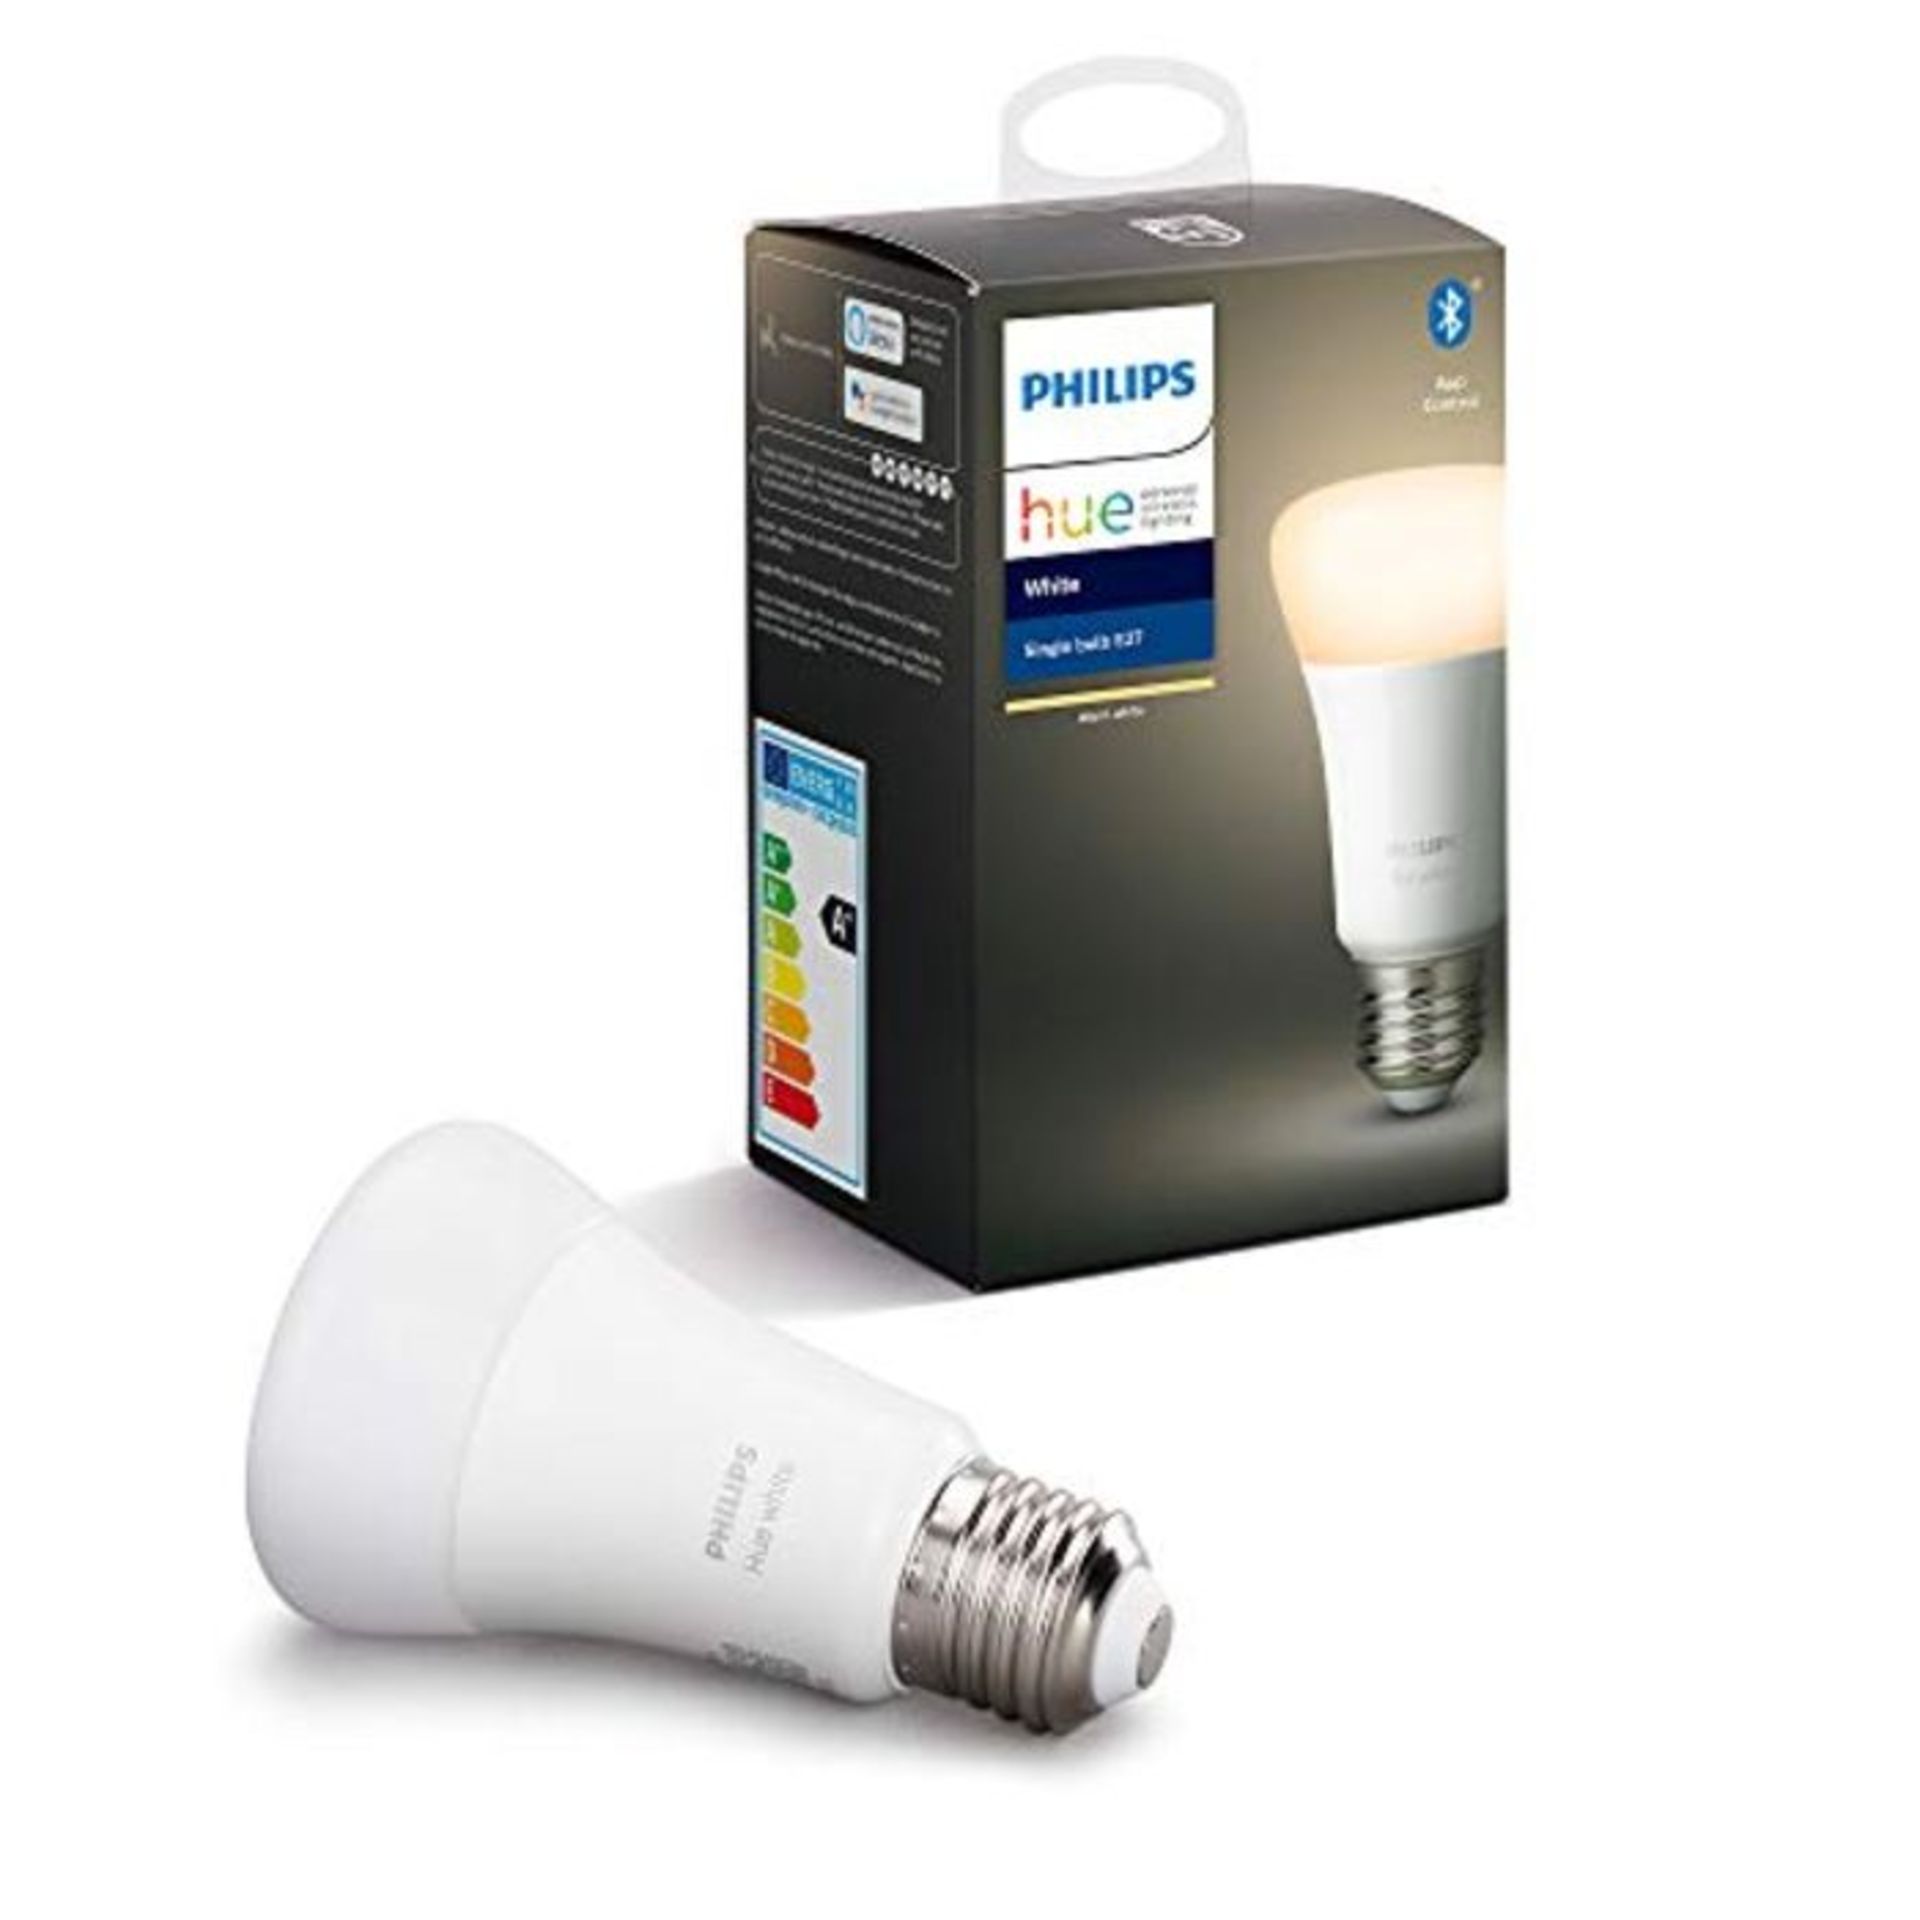 Philips Hue White E27 LED Lampe Einzelpack, dimmbar, warmweiÃxes Licht, steuerbar vi